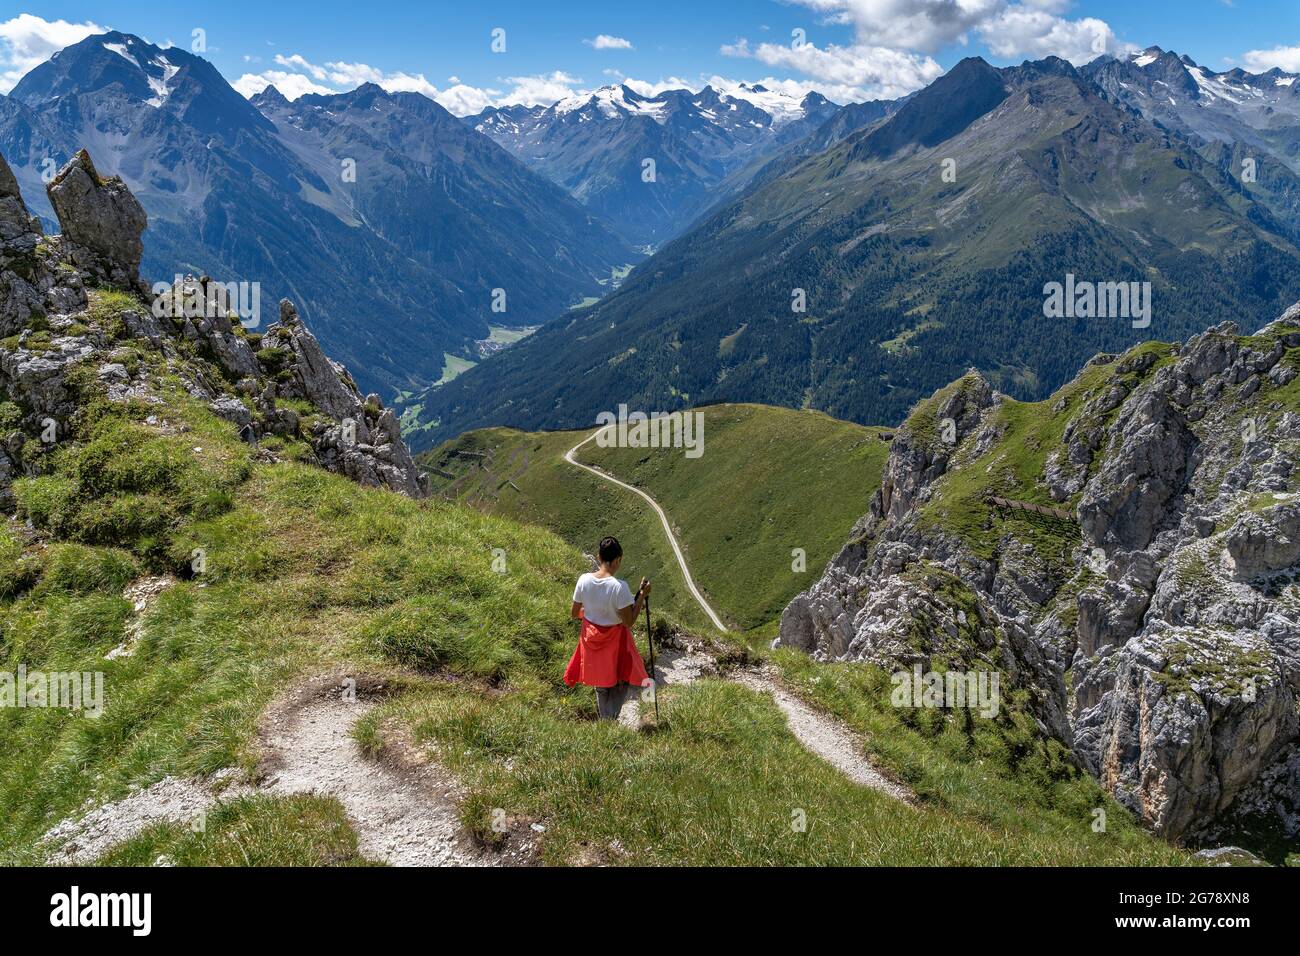 Europe, Autriche, Tyrol, Alpes de Stubai, randonnée femelle sur la descente avec vue sur Habicht et Brennerspitze Banque D'Images